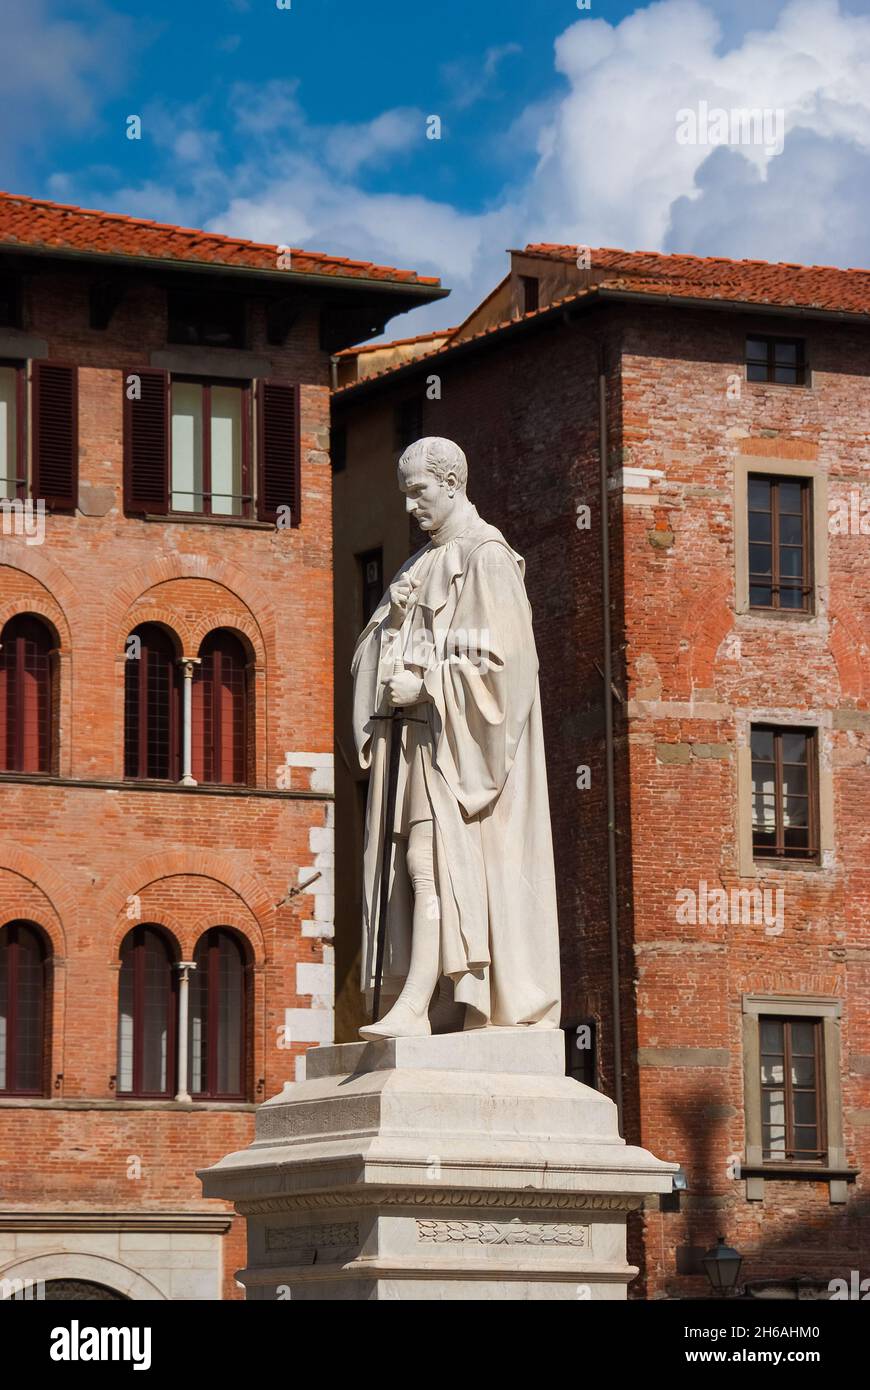 Francesco Burlamacchi, capo della vecchia repubblica di Lucca contro Firenze medicea in età rinascimentale. Monumento eretto nel 1863 nella città storica di ce Foto Stock